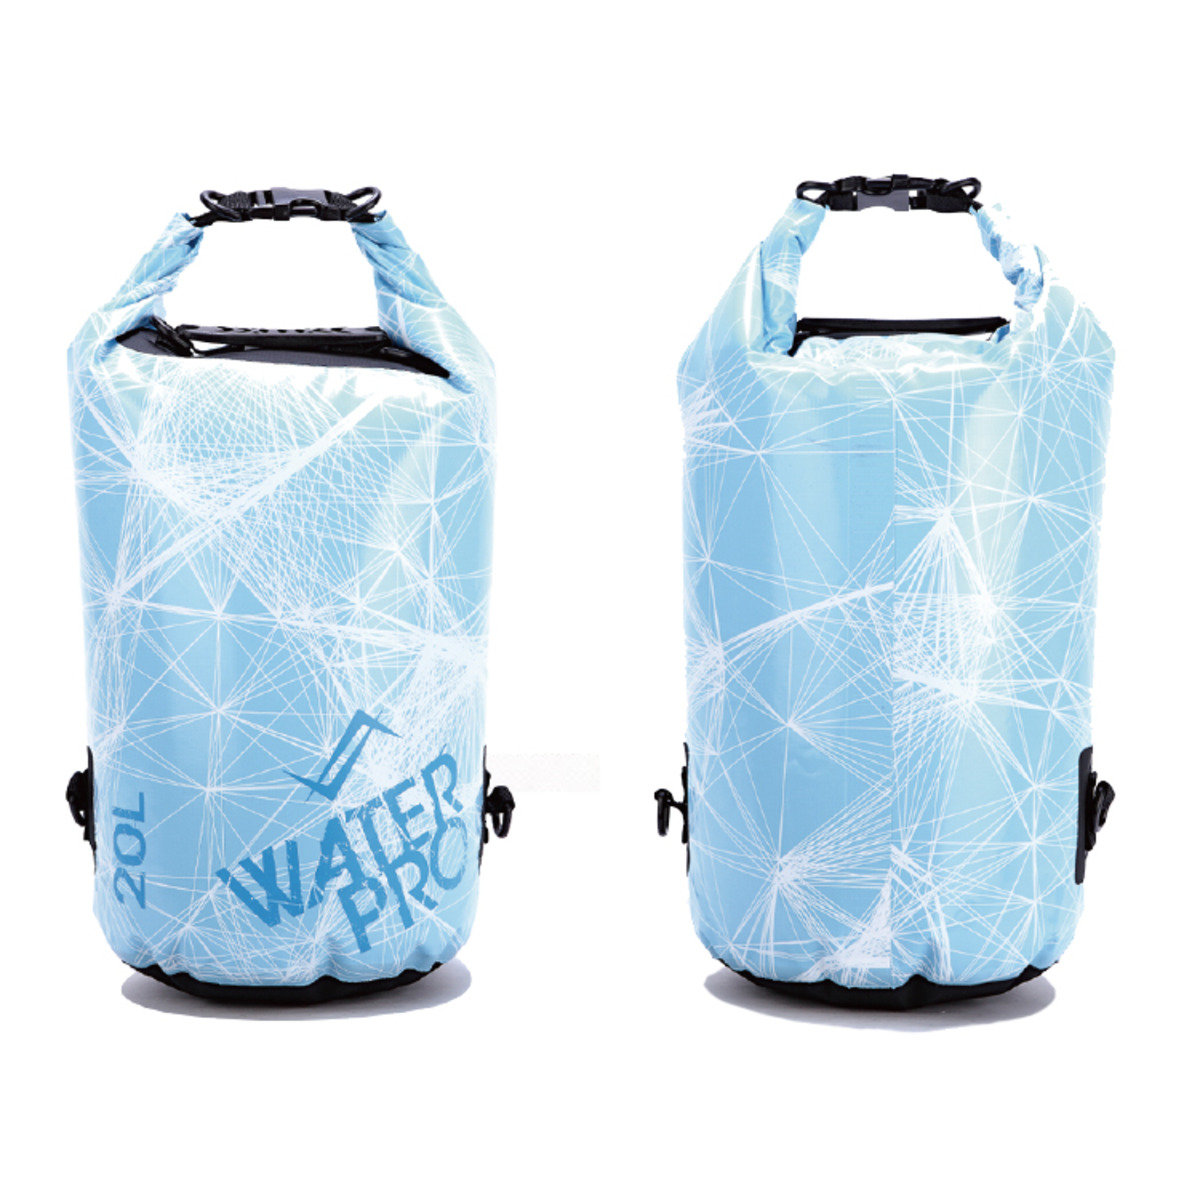 防水袋添加防水隔膜 融雪款 30L